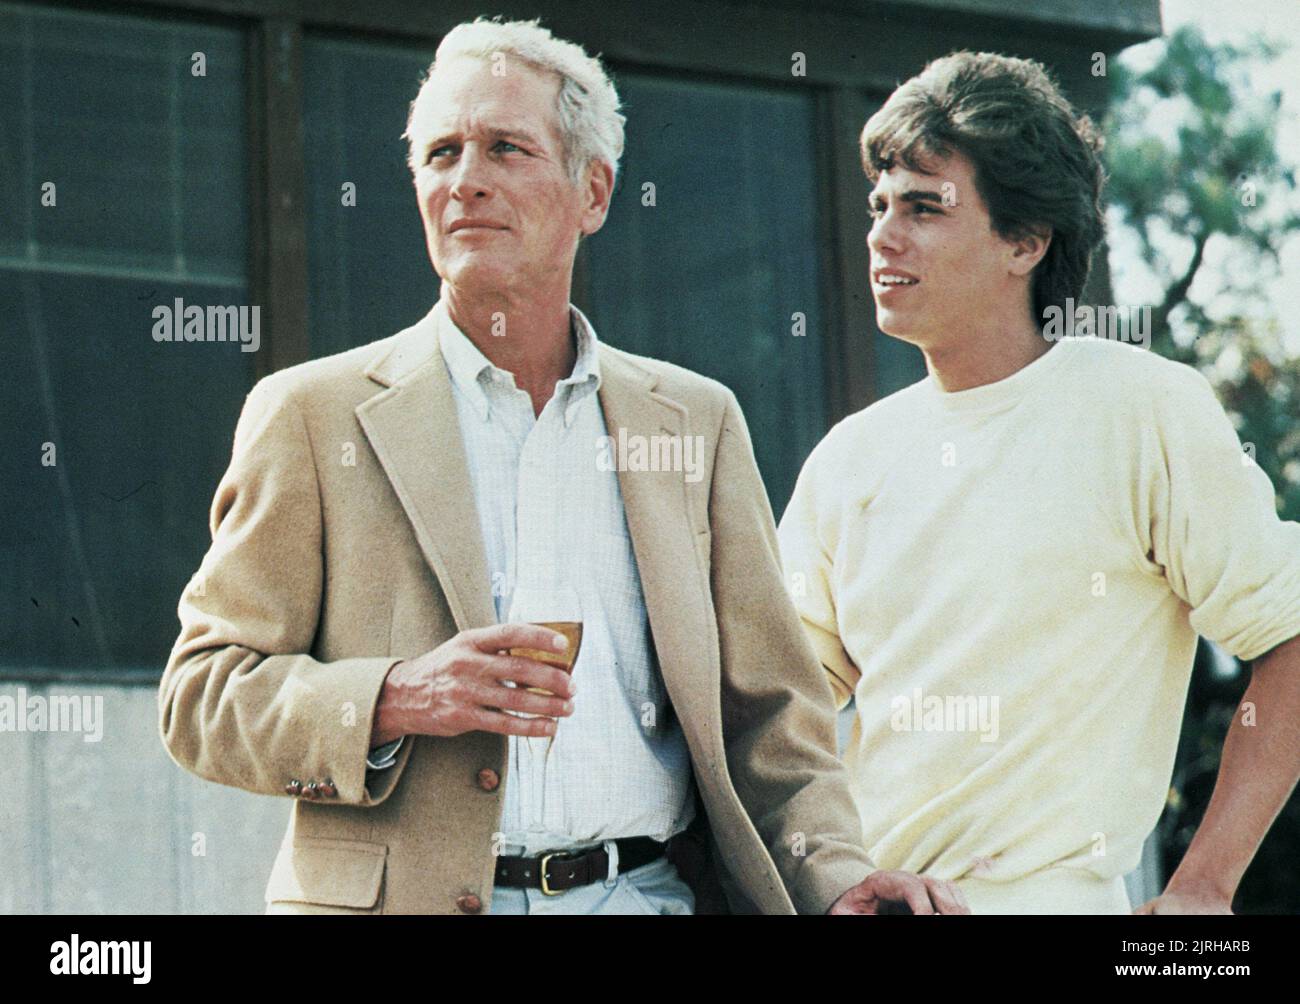 Son paul. Скотт Нью́ман. Пол Ньюман с сыном. Harry & son’ (1984). Пол Ньюман 2004 год.